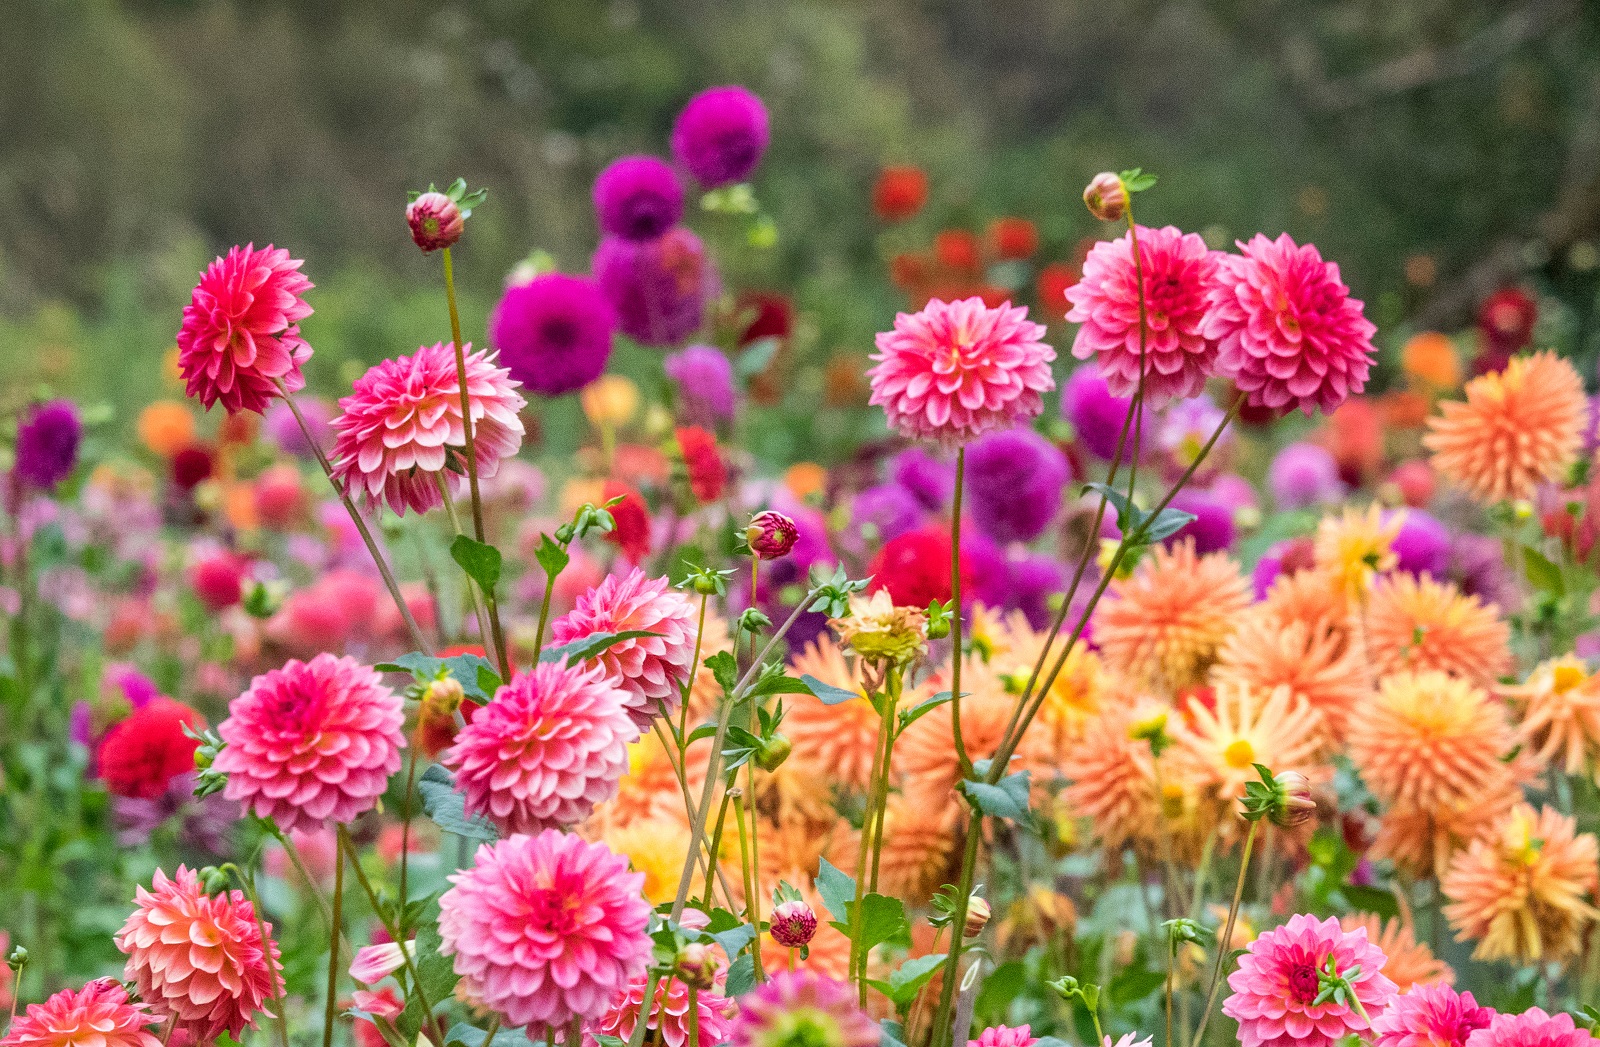 Forcer les dahlias pour avoir de magnifiques fleurs tout l'été. © Danita Delimont , AdobeStock